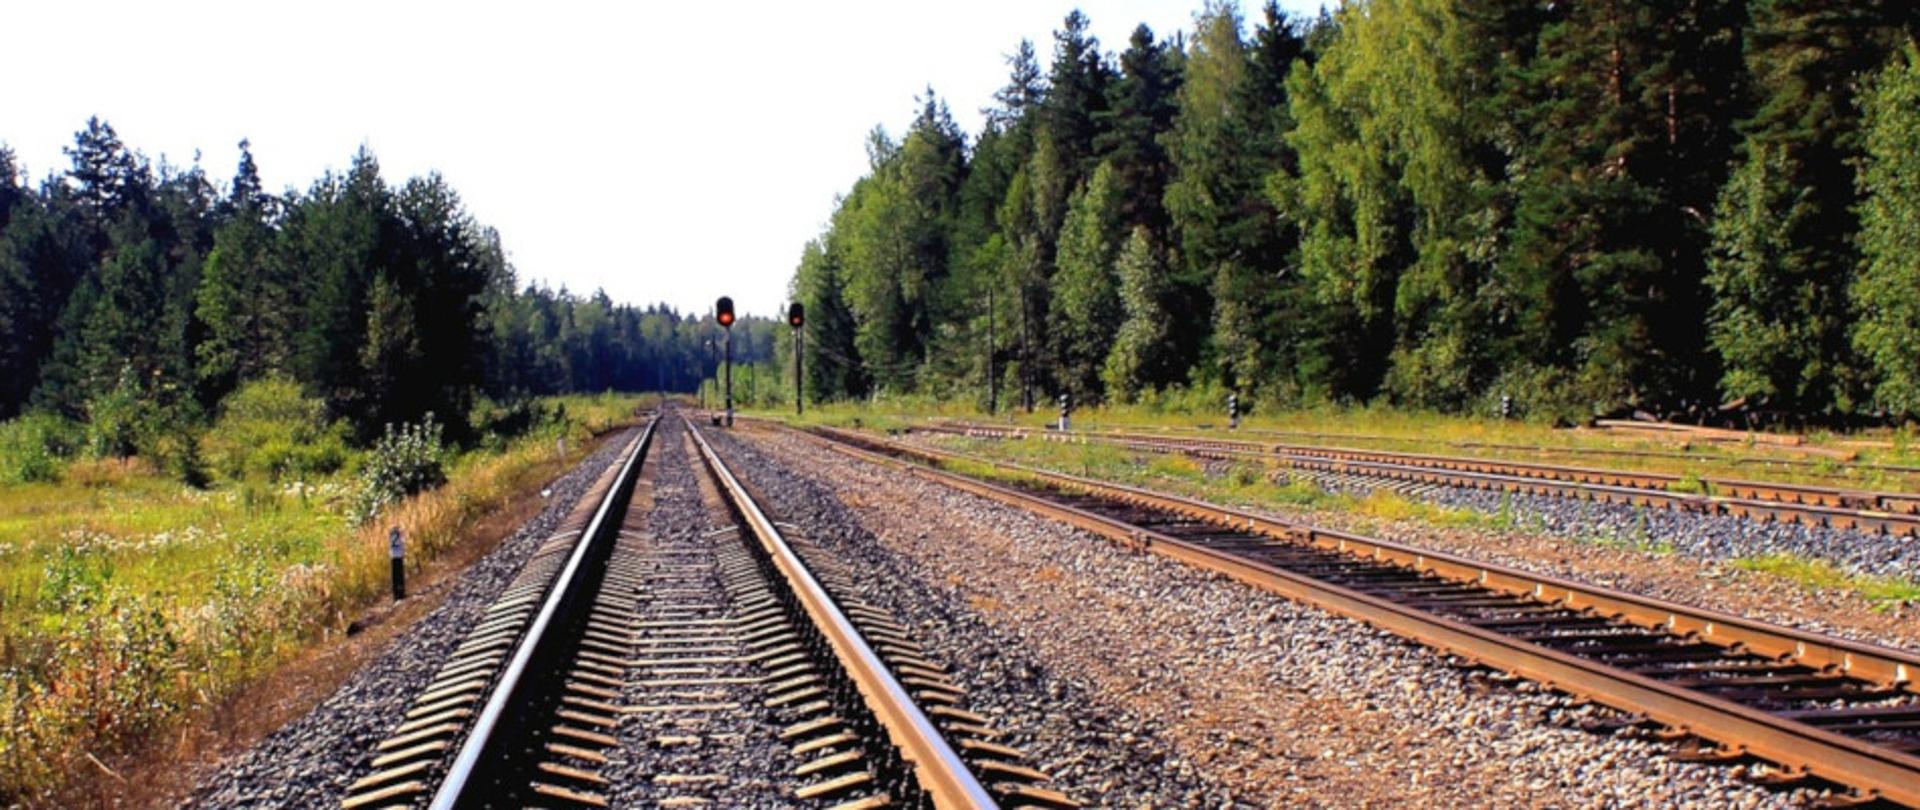 baner pkp - na zdjęciu widać tory kolejowe idące przez las